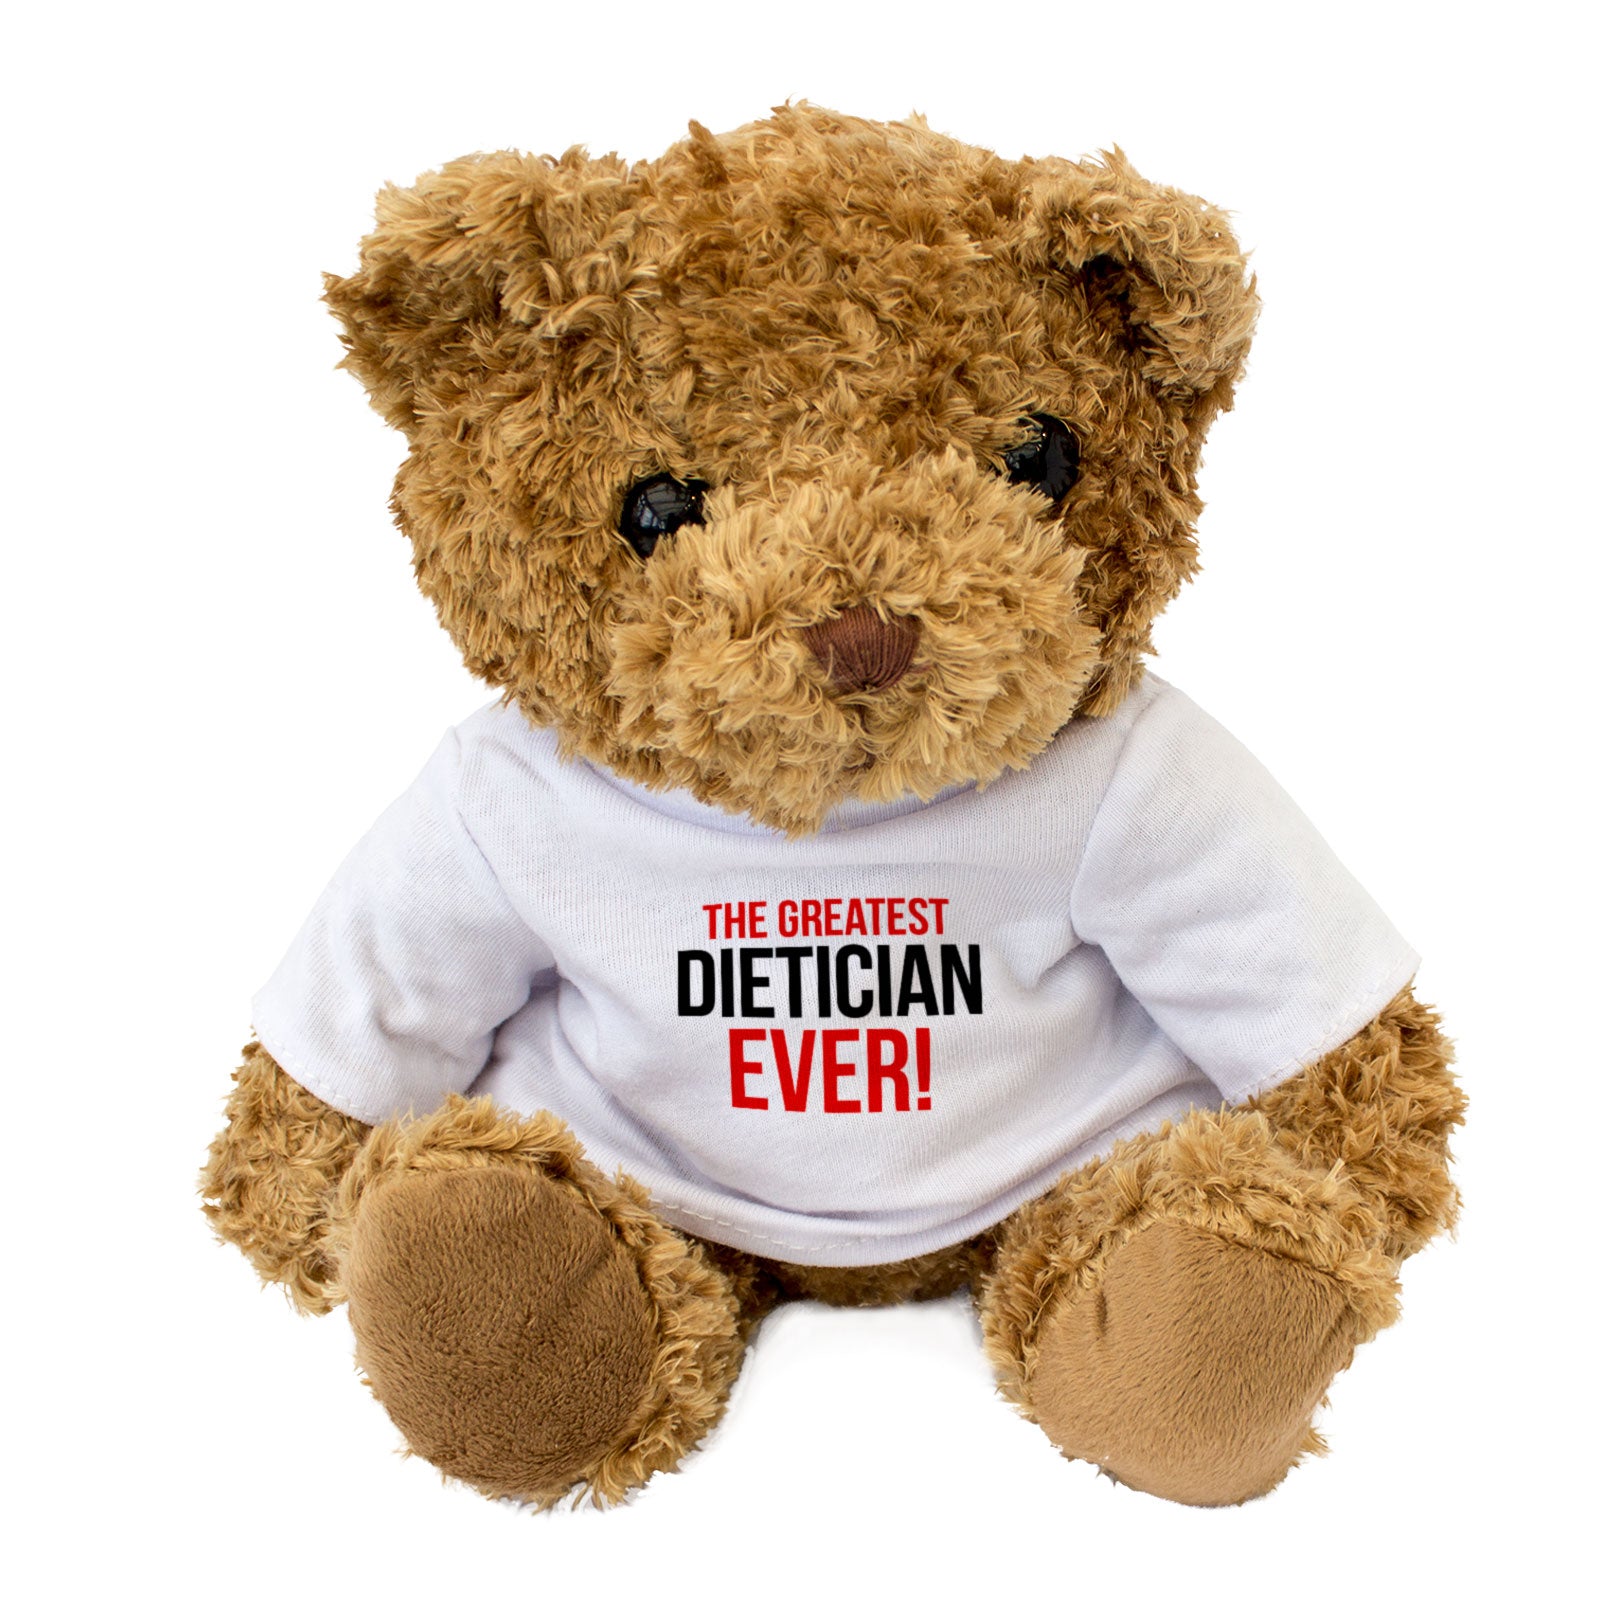 The Greatest Dietician Ever - Teddy Bear